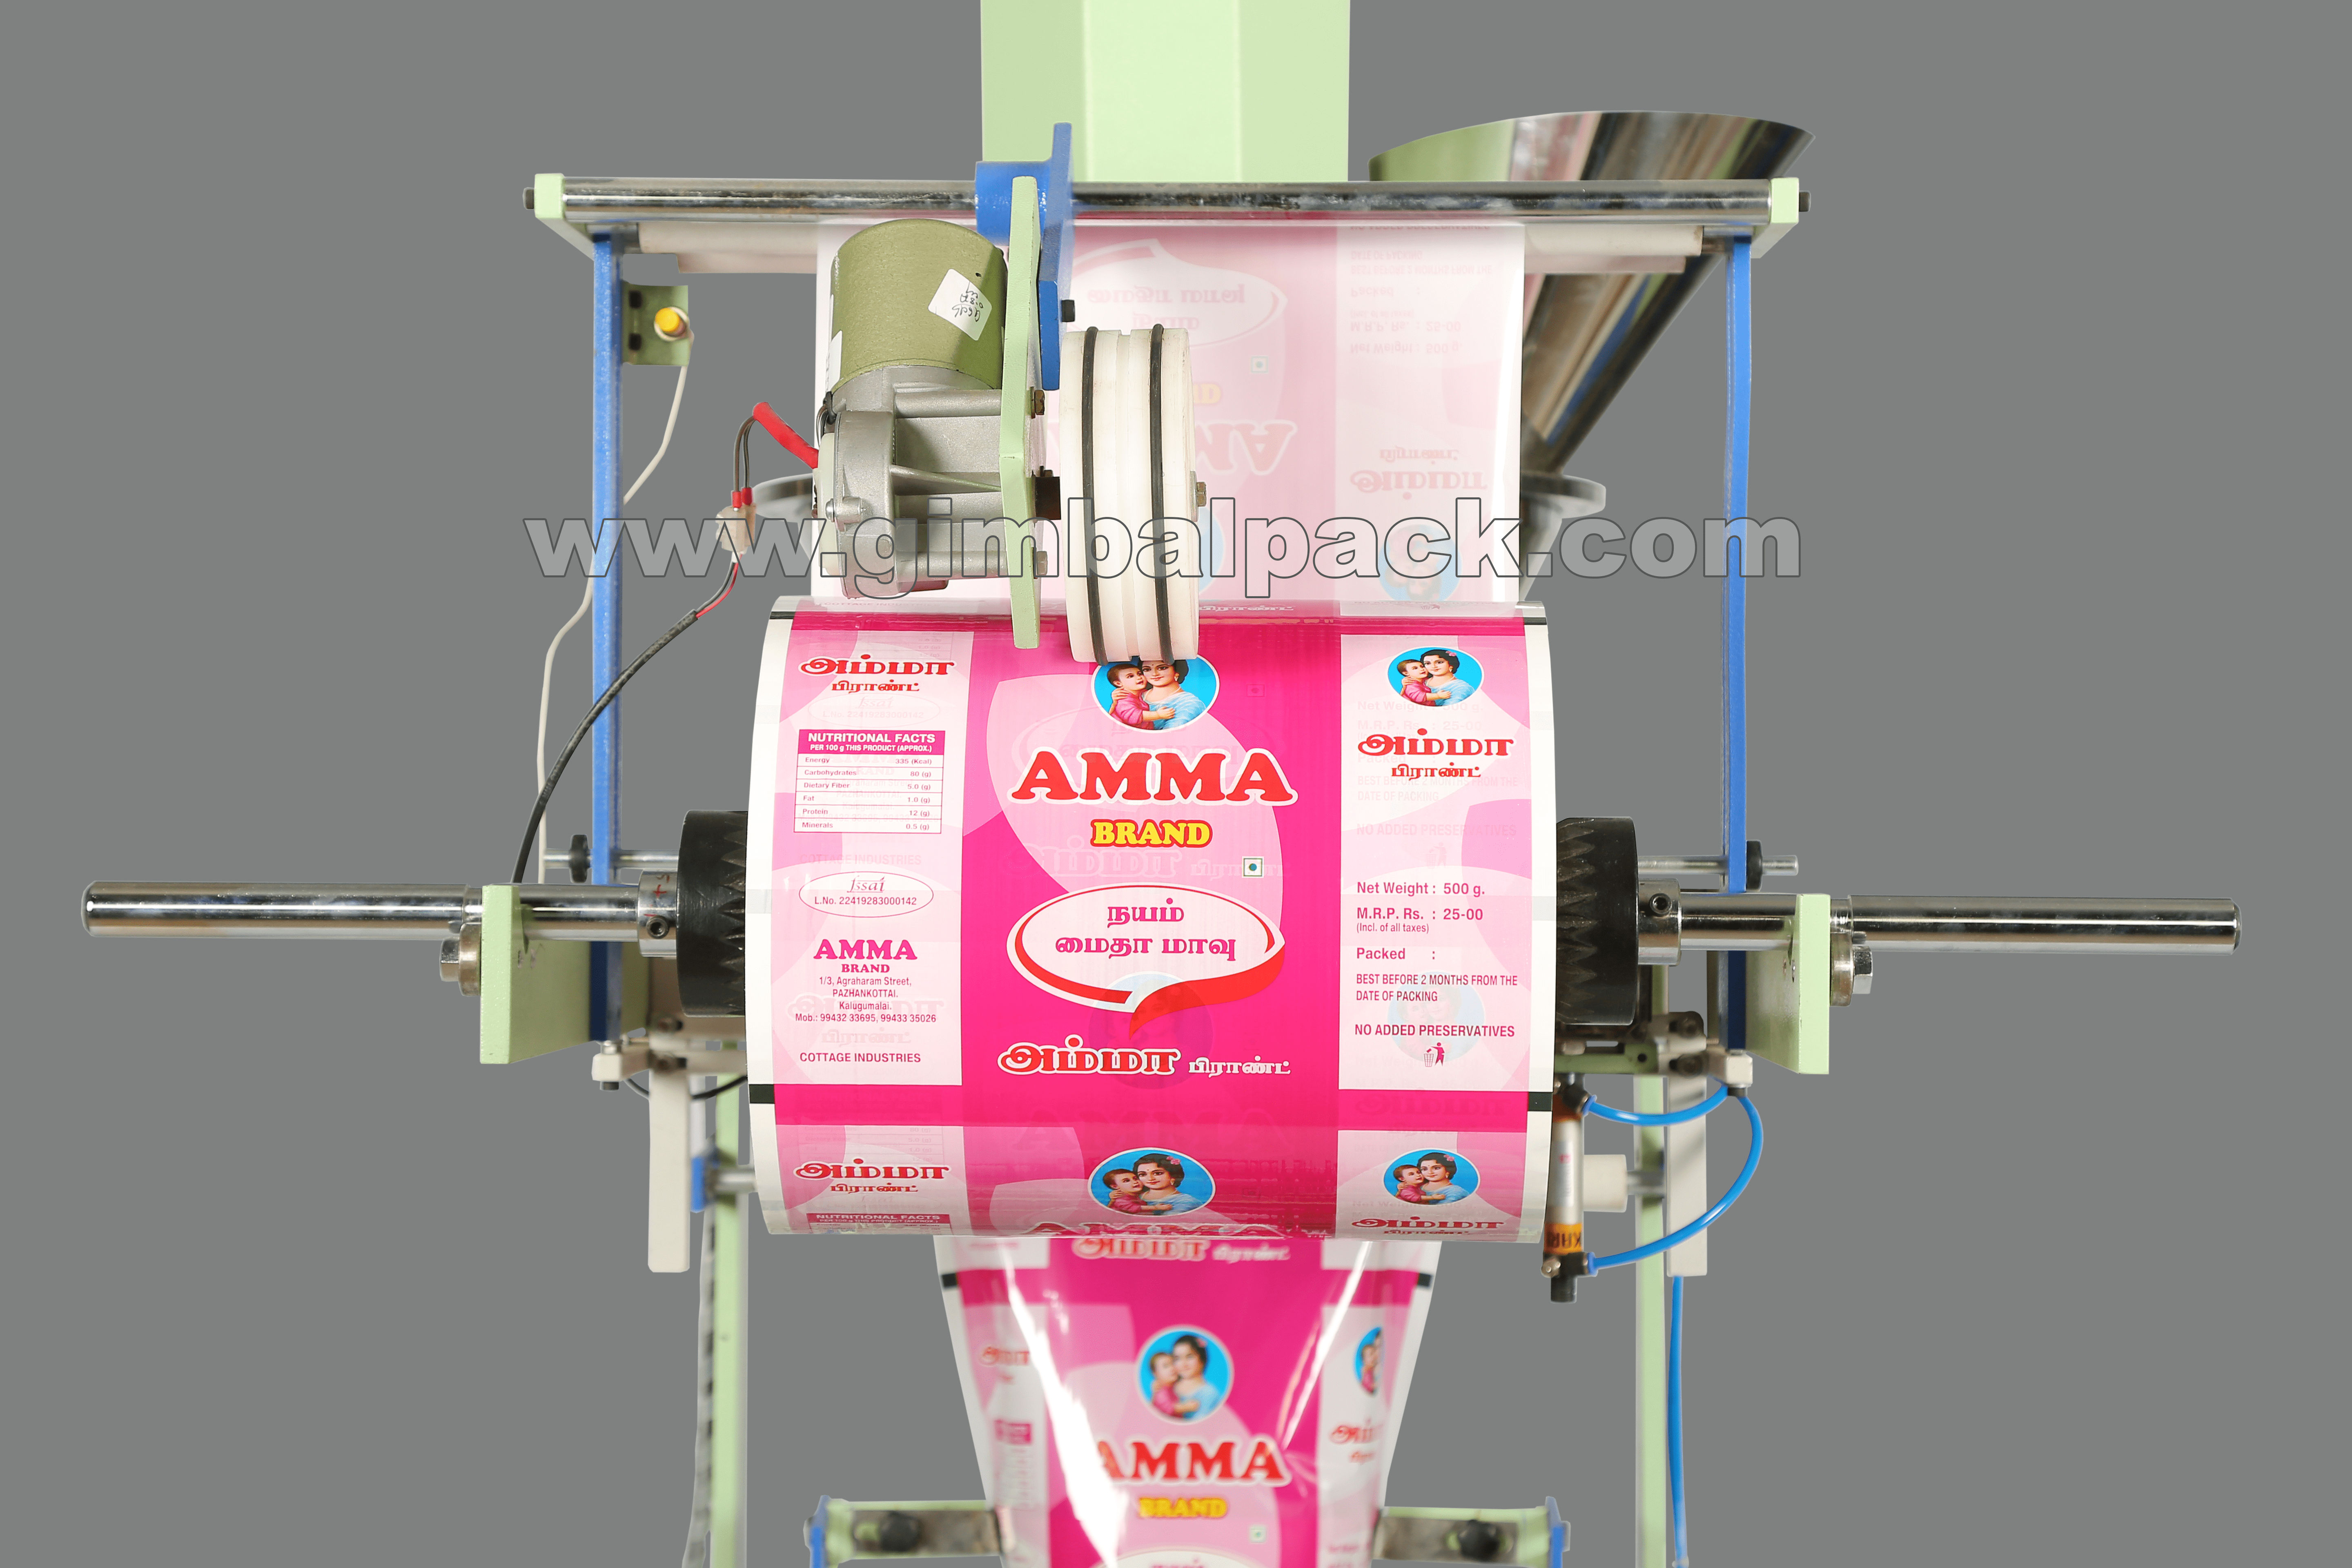 Masala Powder Packing Machine  In Coimbatore